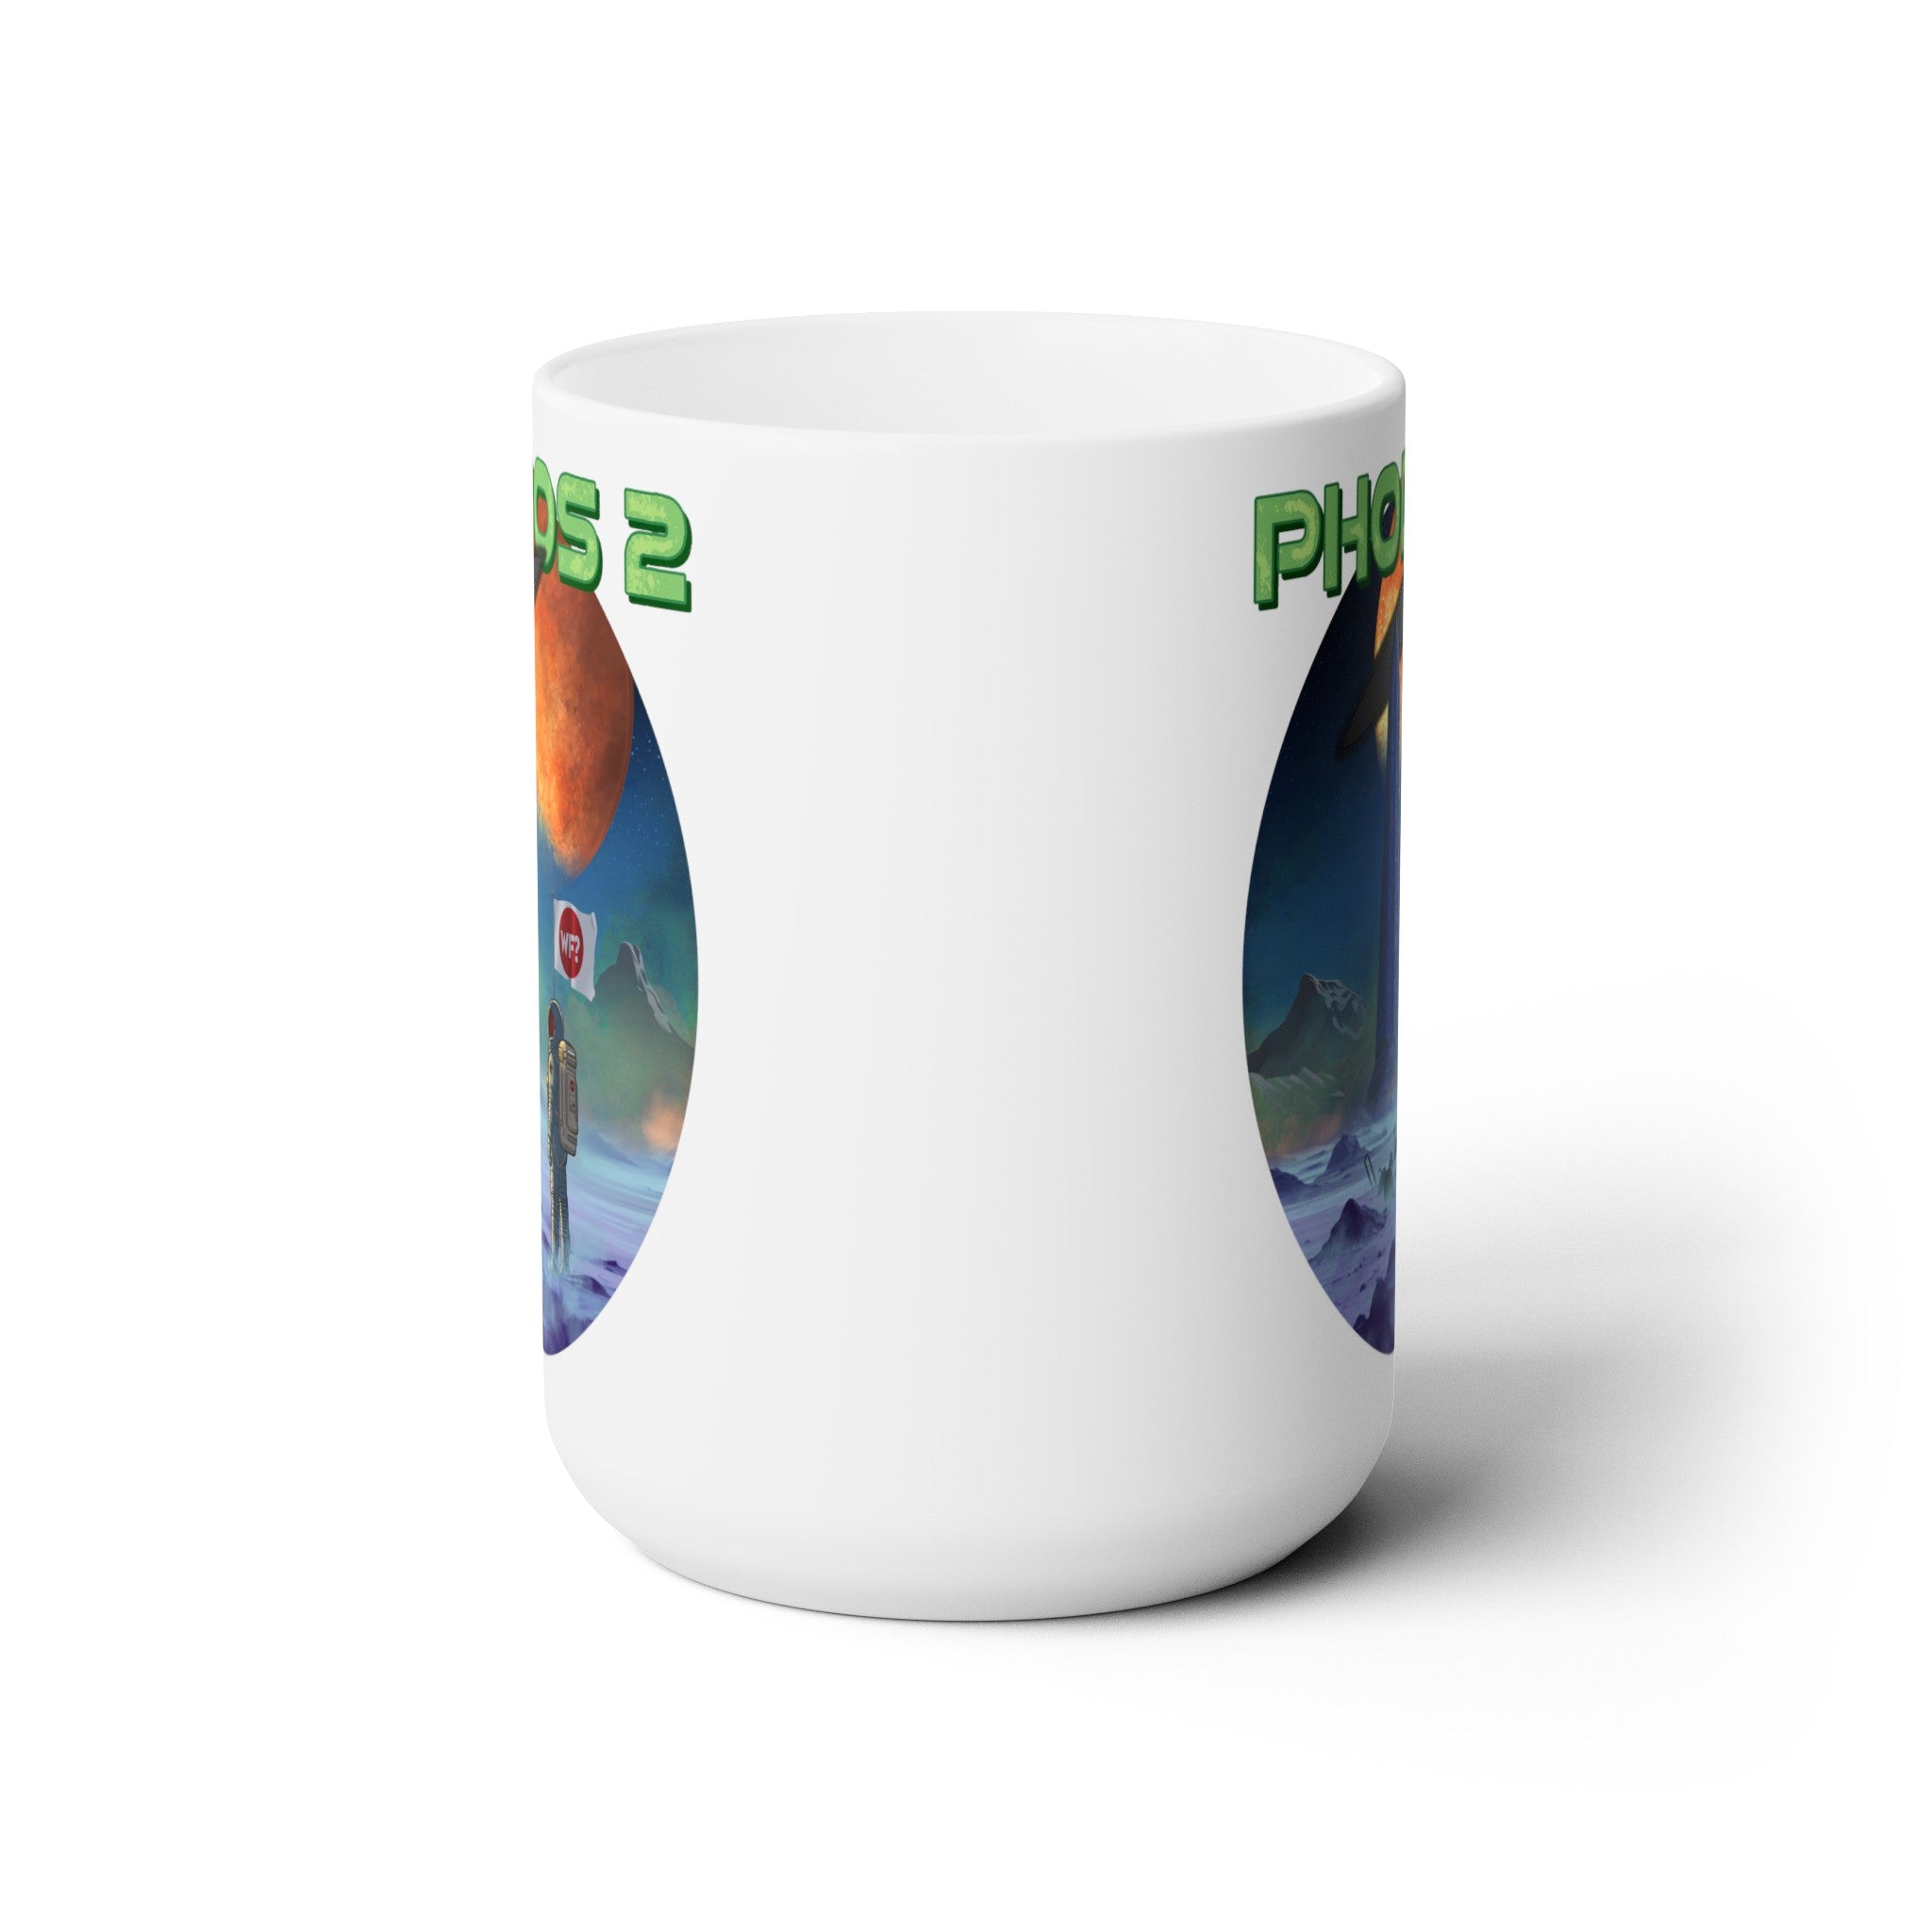 4/11 Phobos 2 Ceramic Mug 15oz - 0